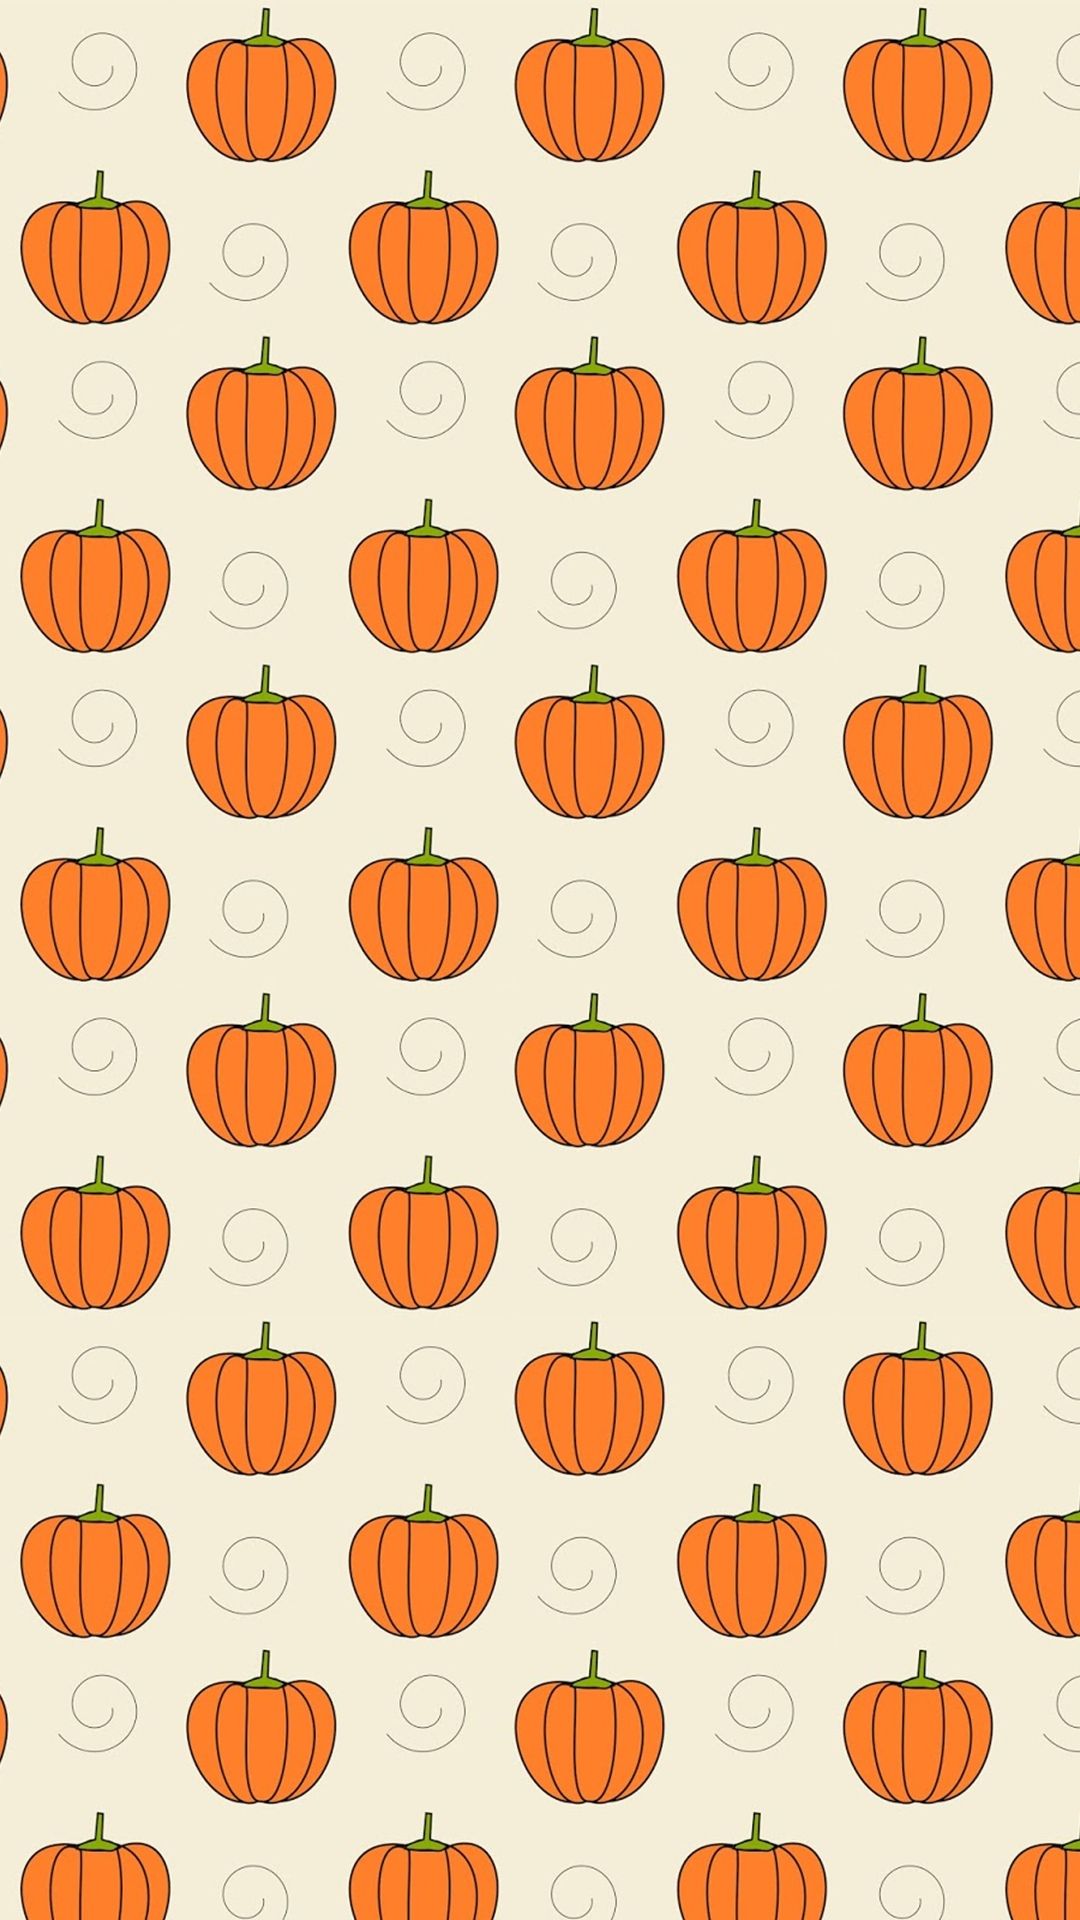 A wallpaper with pumpkins on it - Halloween, cute Halloween, pumpkin, cute fall